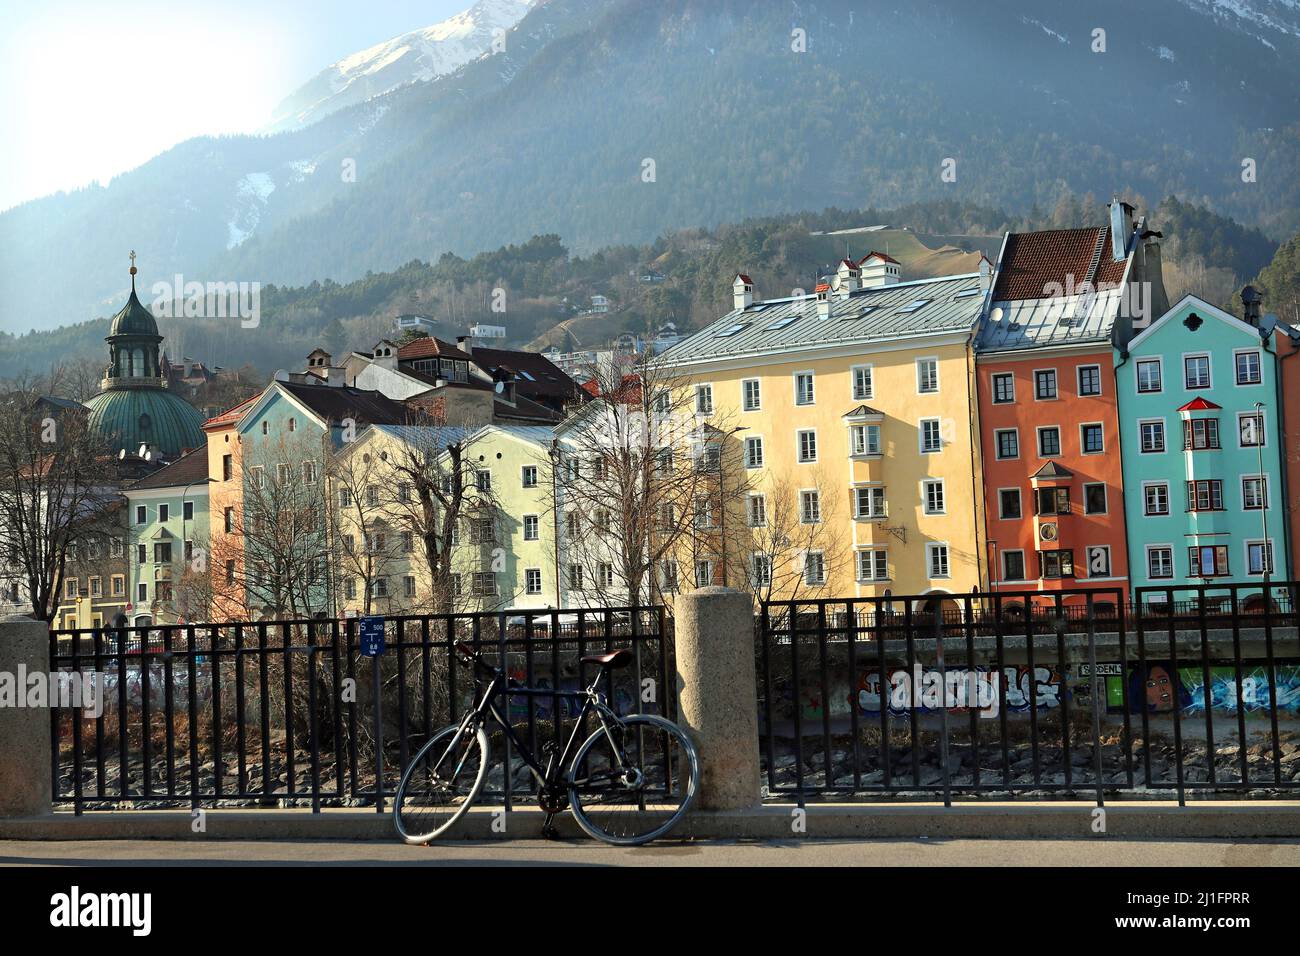 Uno dei siti più iconici di Innsbruck, la fila colorata di edifici dell'architettura Inn-Salzach sul fiume Inn; montagna Nordkette alle spalle Foto Stock